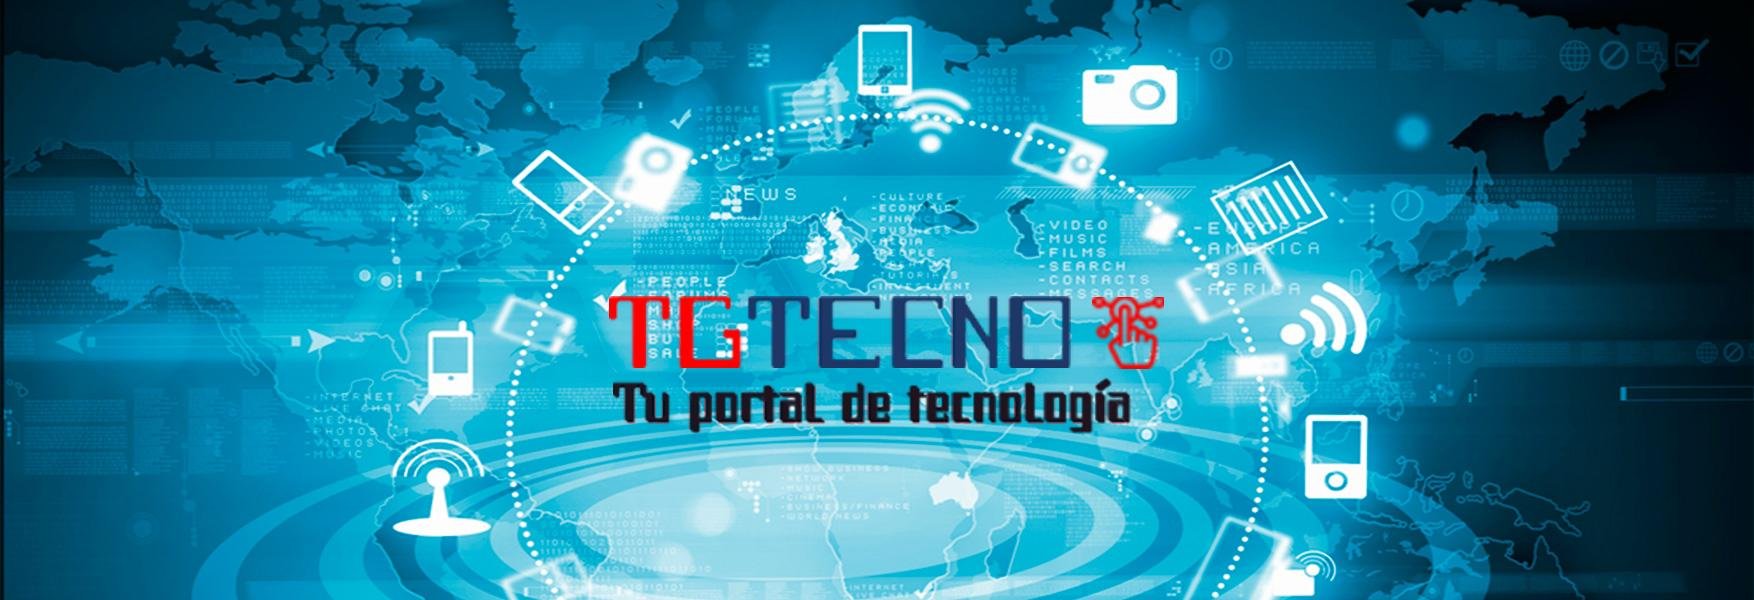 TGTecno es un Portal de Noticias sobre tecnología, que además de sus contenidos propios, muestra las noticias de los medios más importantes del país.